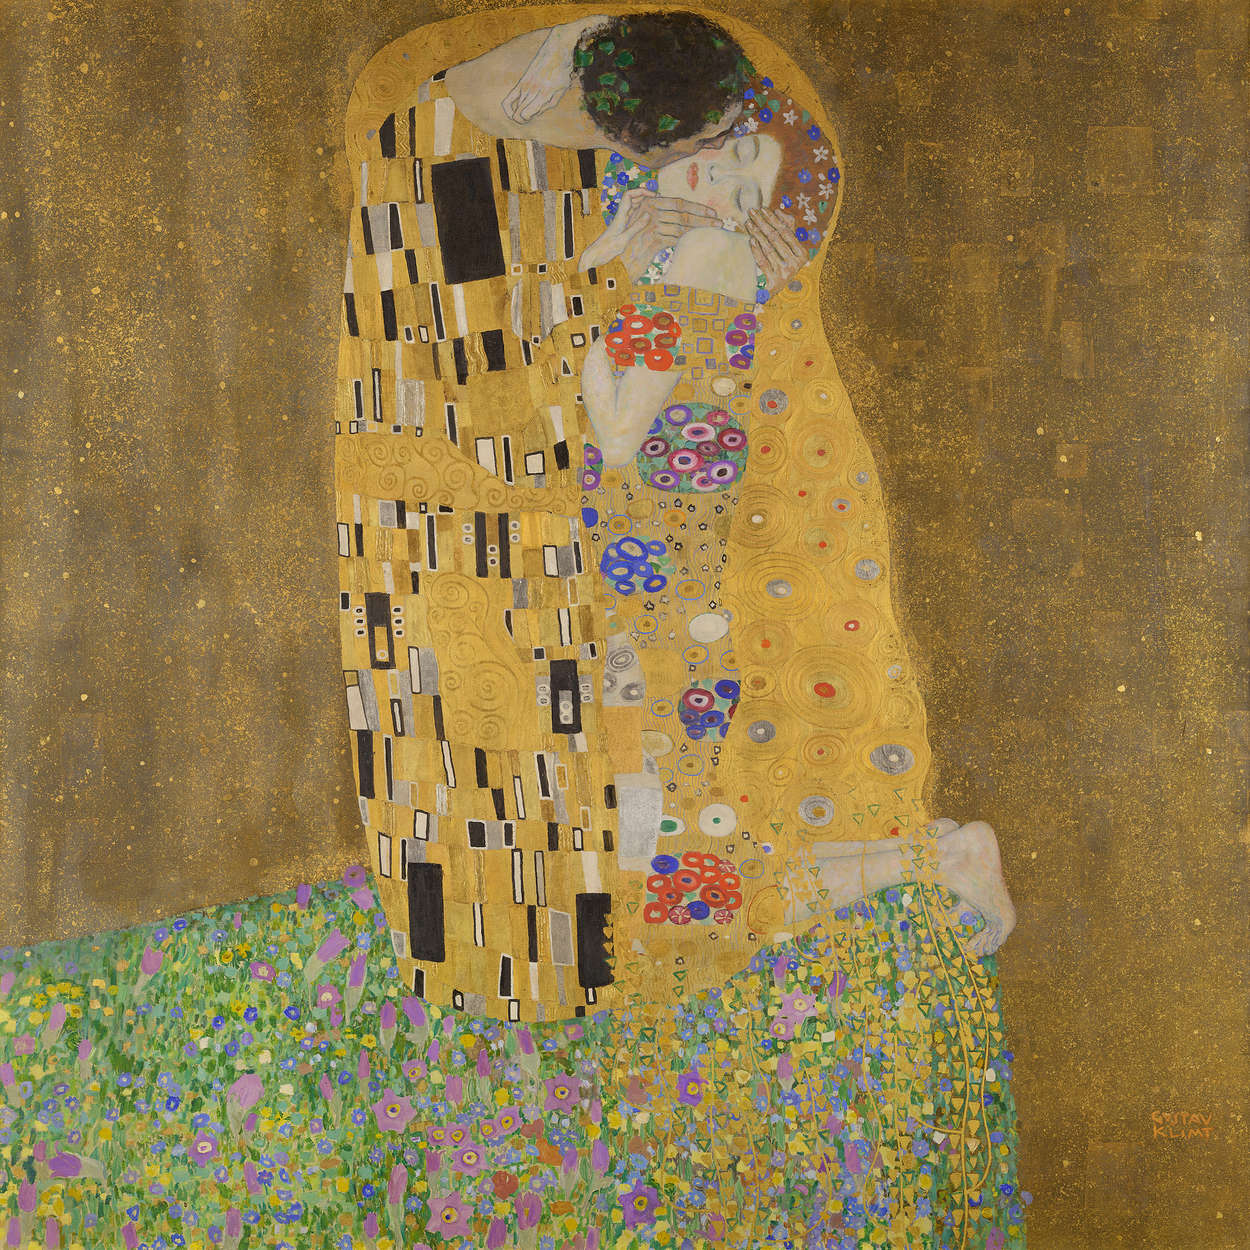             Fototapete "Der Kuss" von Gustav Klimt
        